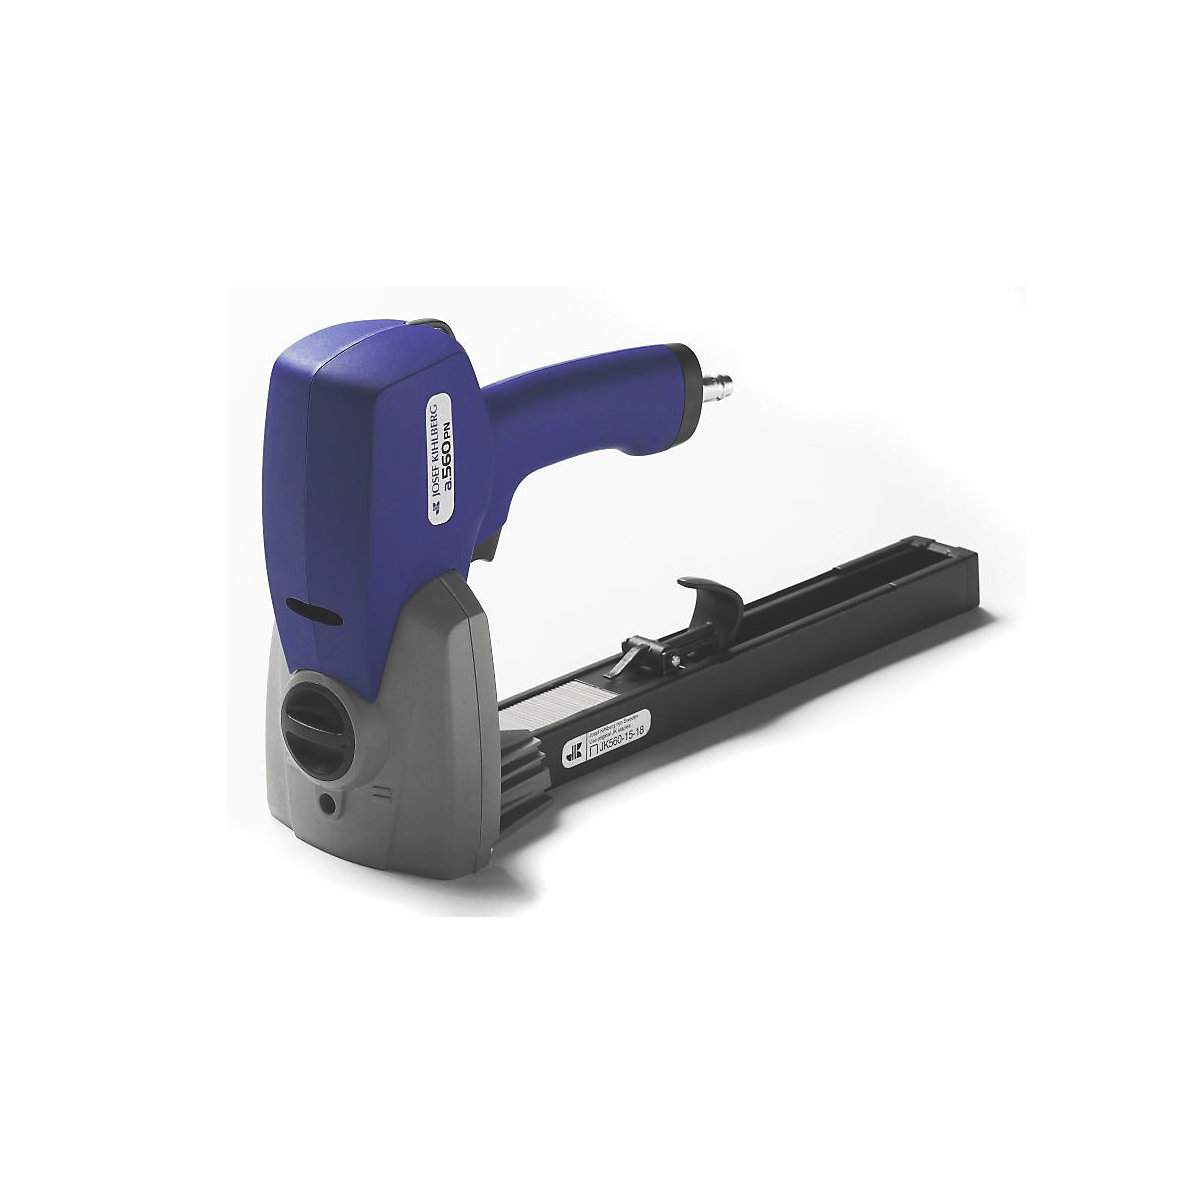 Handheld sealing stapler, for joining cardboard, pneumatic for staples 22 mm-2